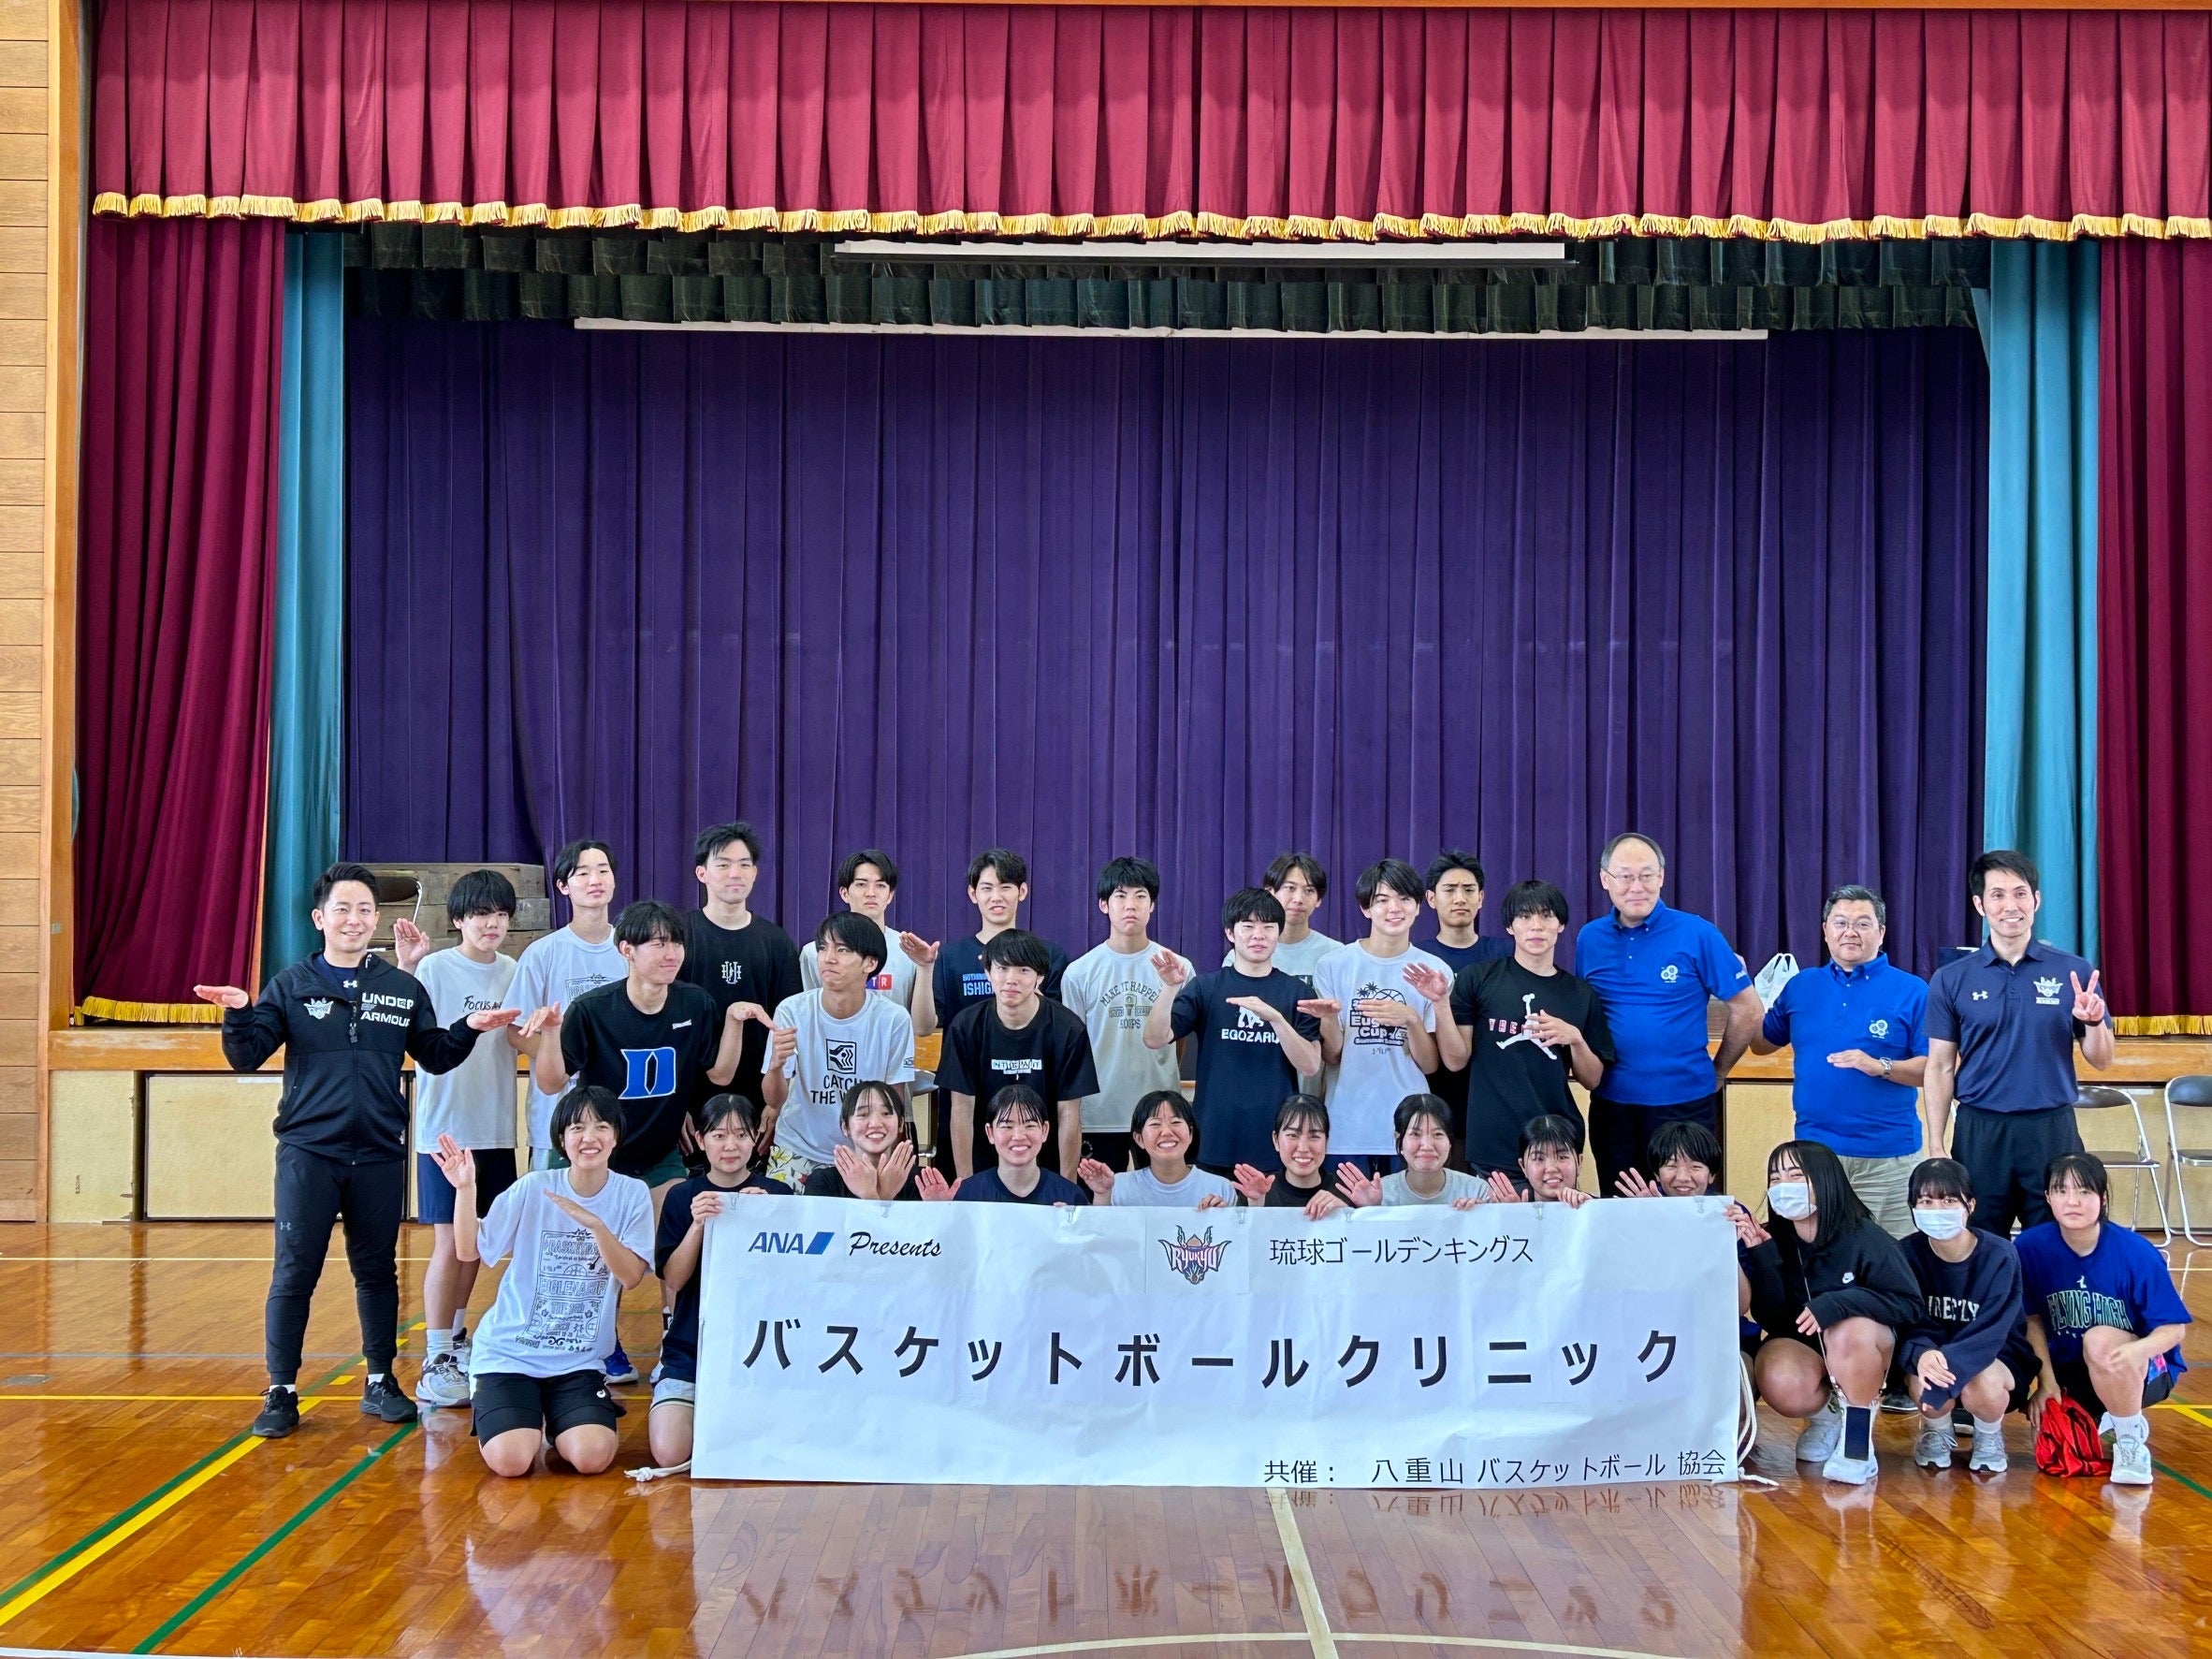 ANA presents 石垣島バスケットボールクリニック 実施のご報告